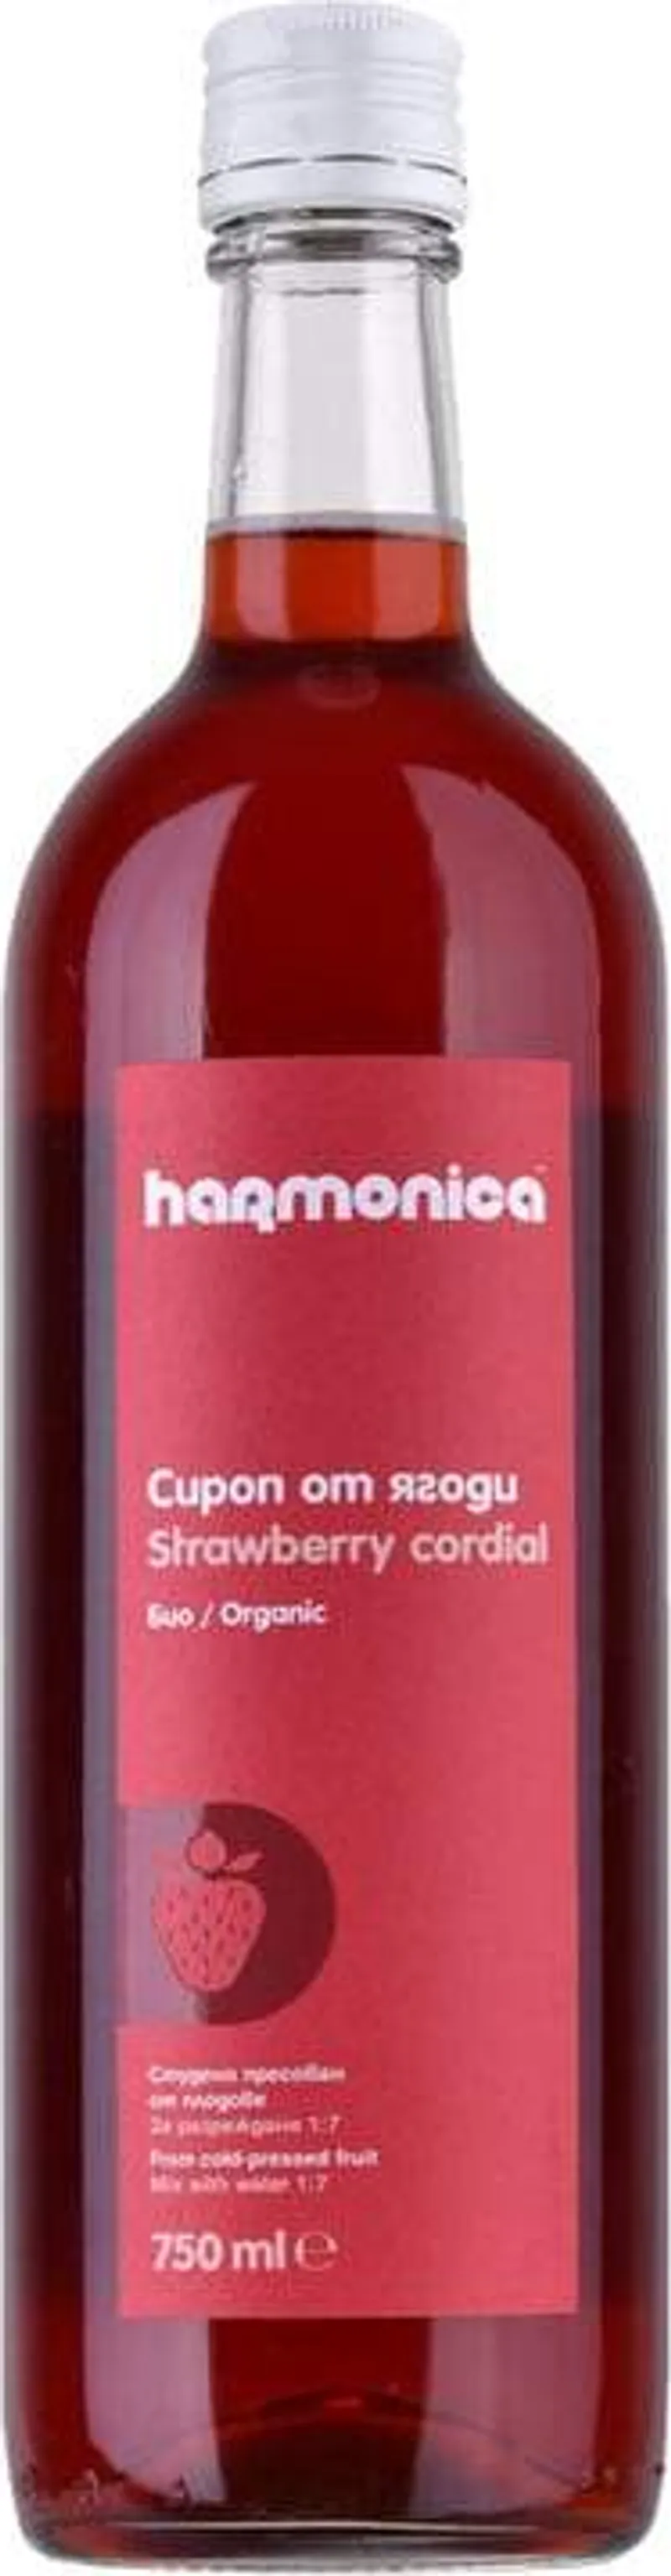 БИО сироп Хармоника От ягода (750мл)